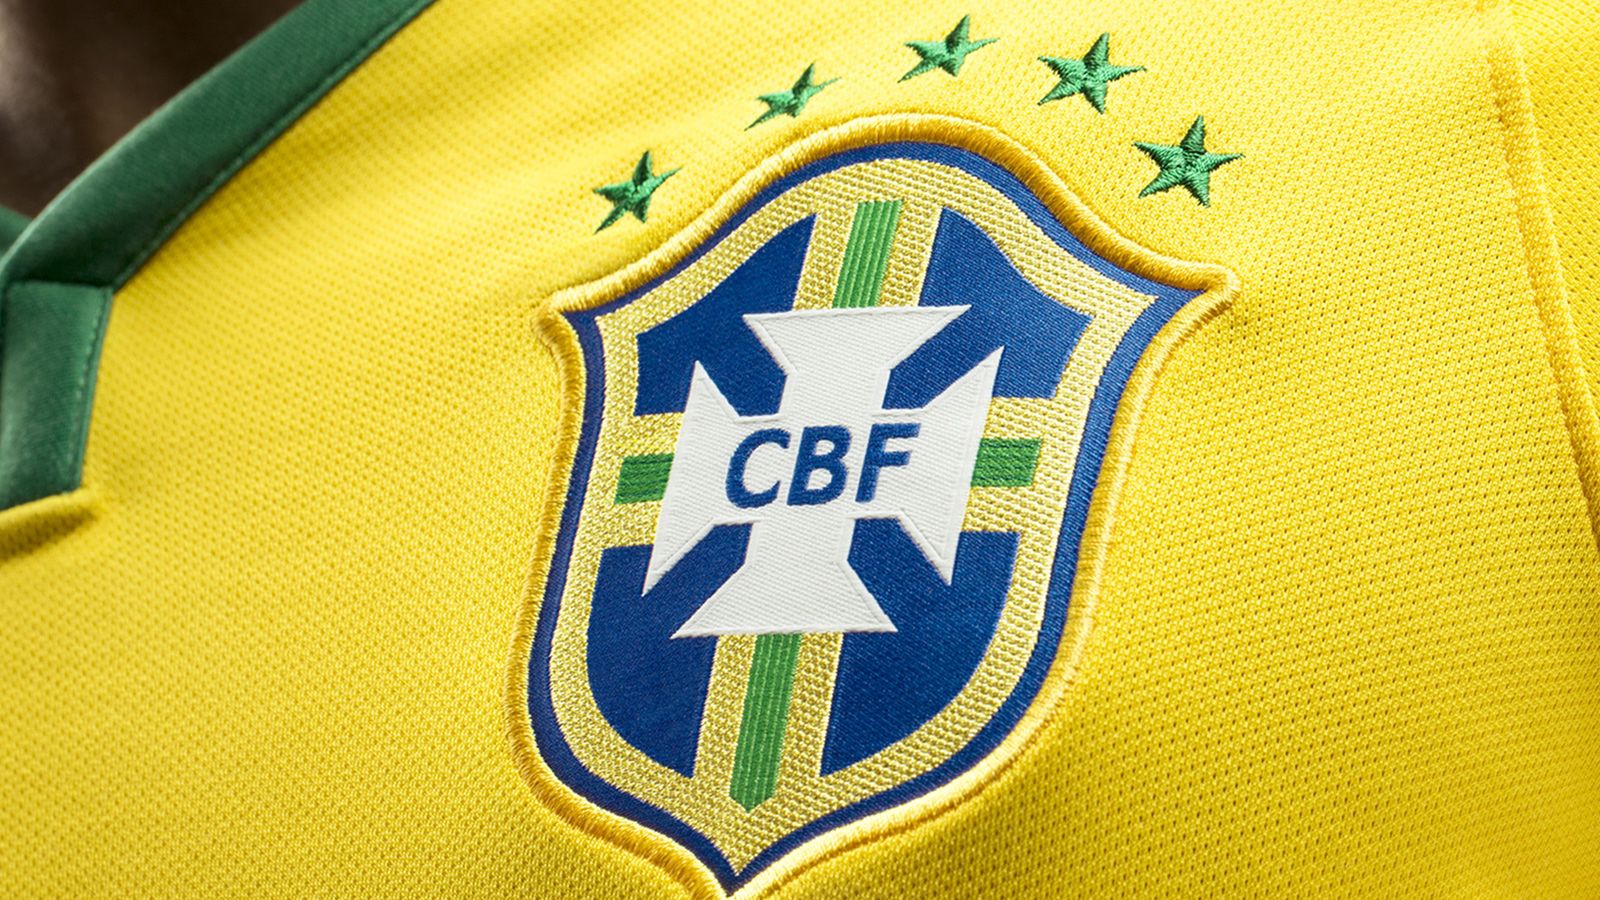 Camisa Seleção Brasileira 2018 - Elenco